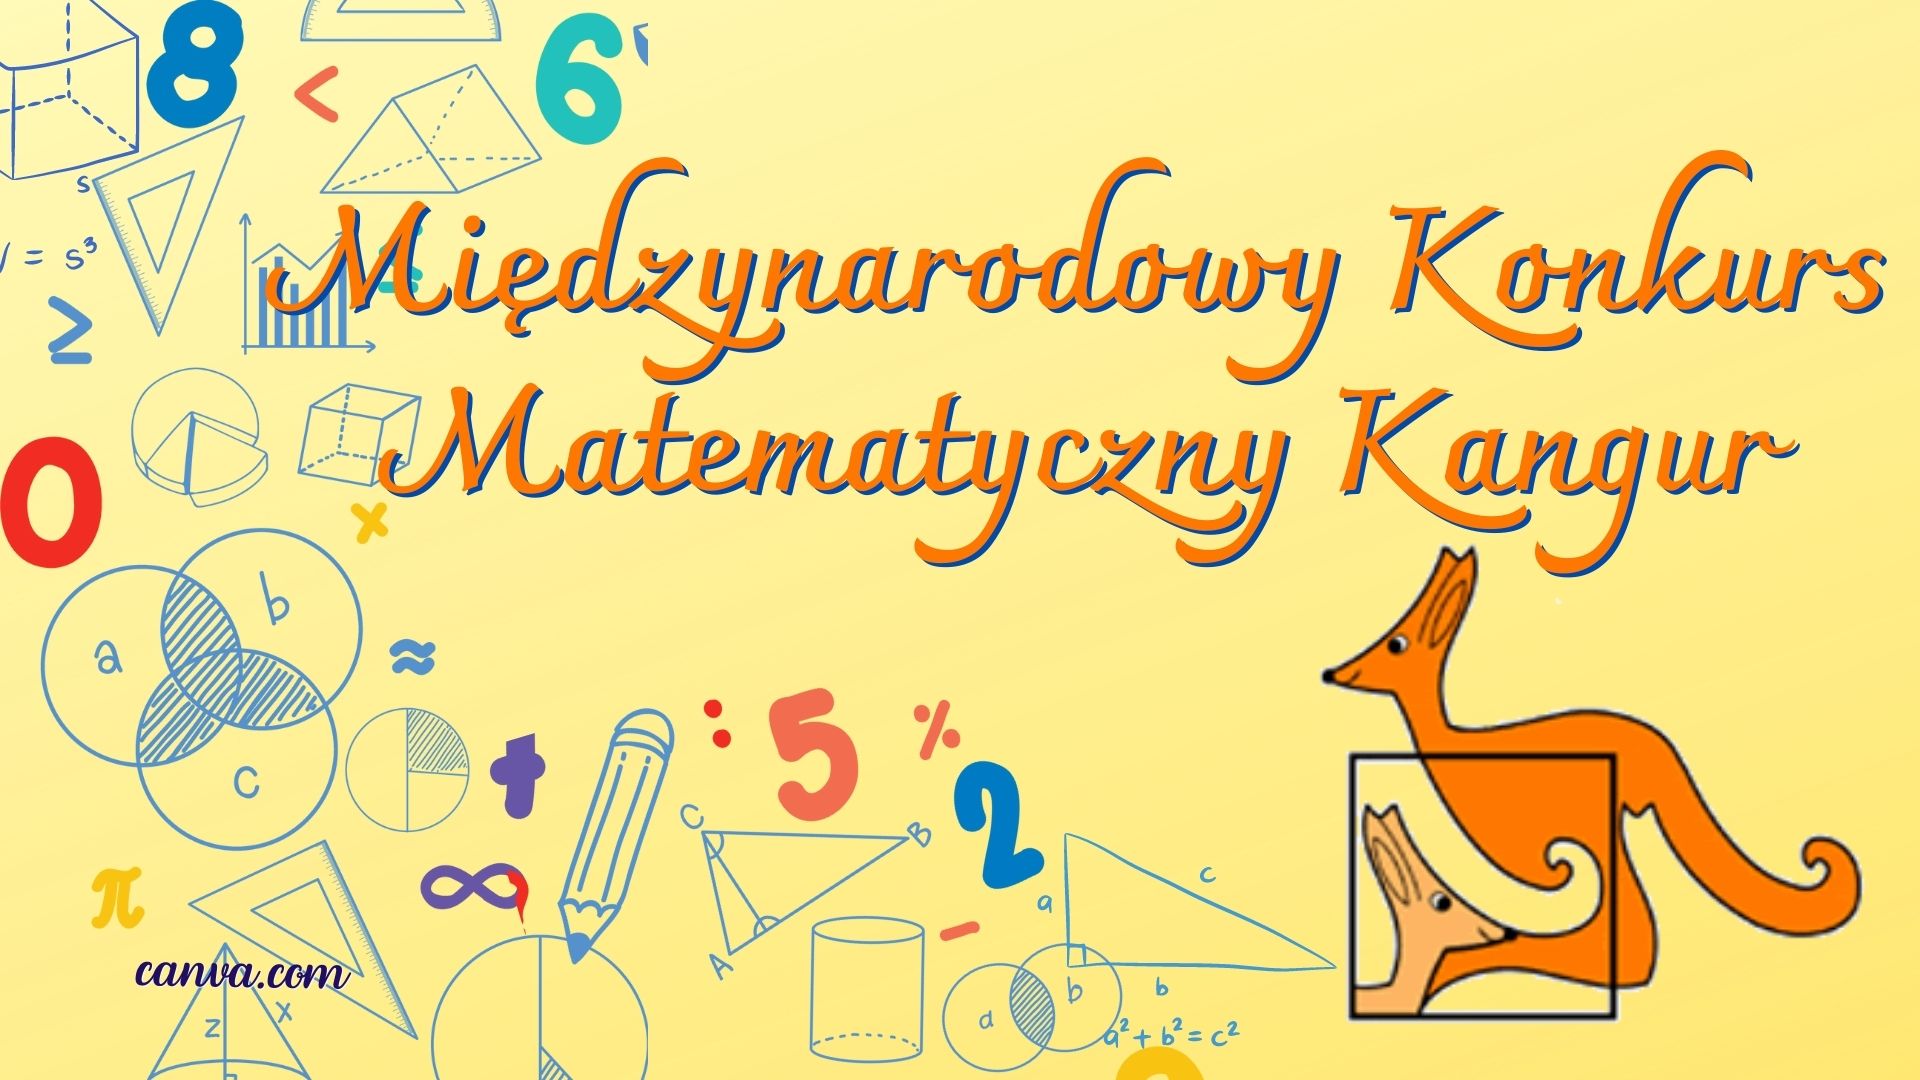 Międzynarodowy Konkurs Matematyczny Kangur